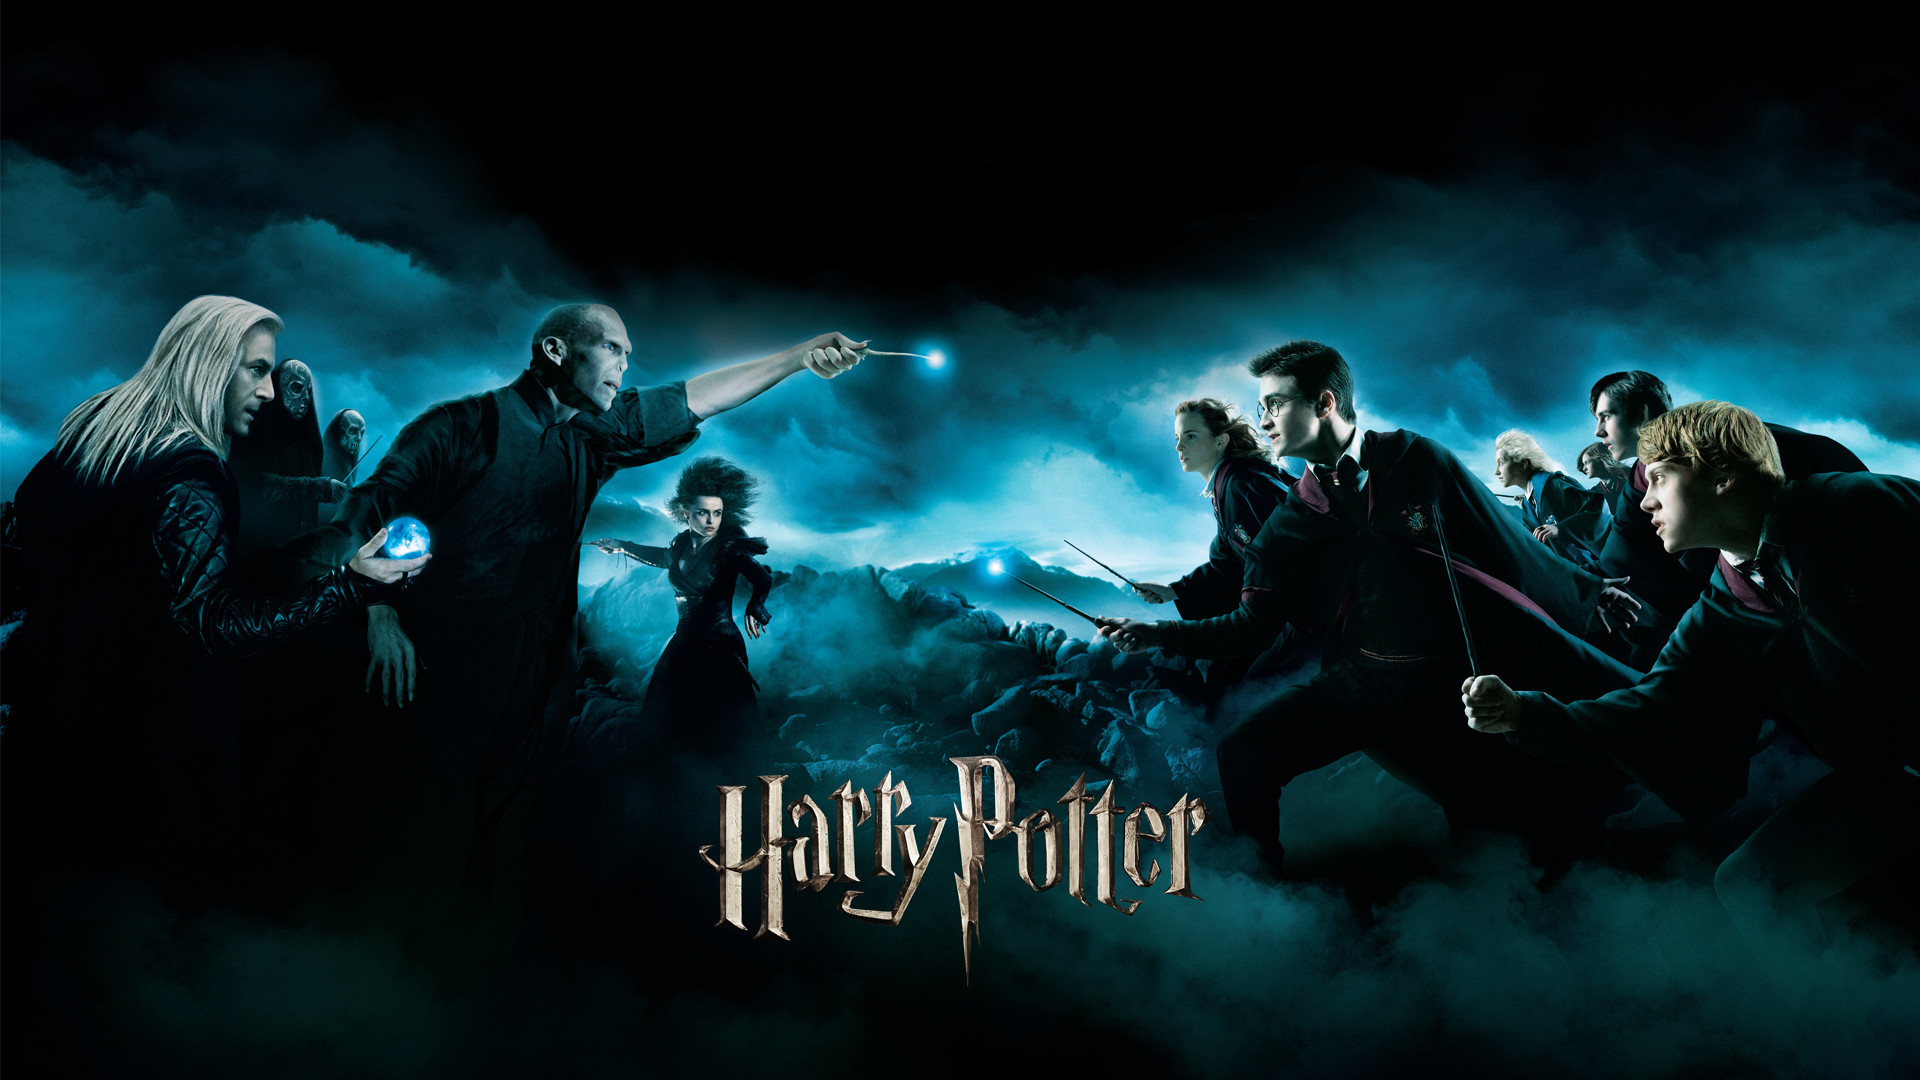 Harry Potter Wallpapers Data-src /w/full/1/c/9/233376 - Harry Potter  Wallpaper Pc - 1920x1080 Wallpaper 